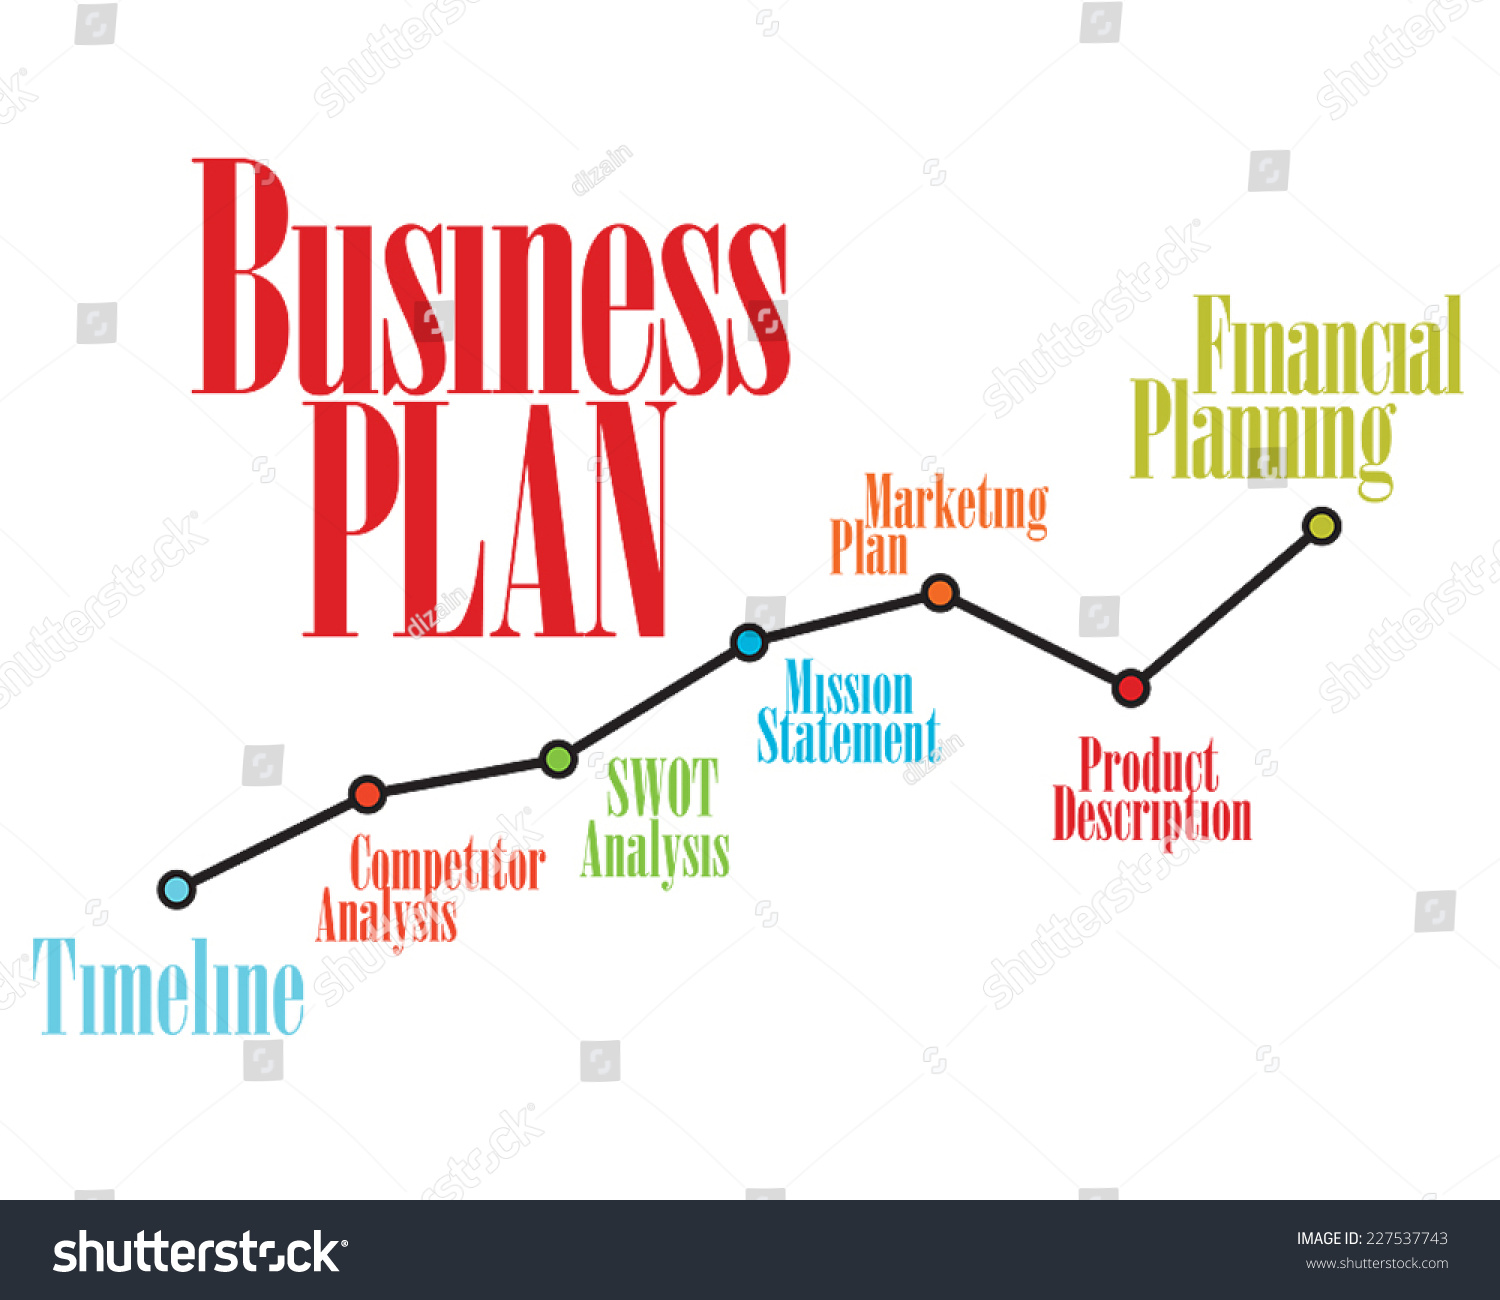 Business plan and description